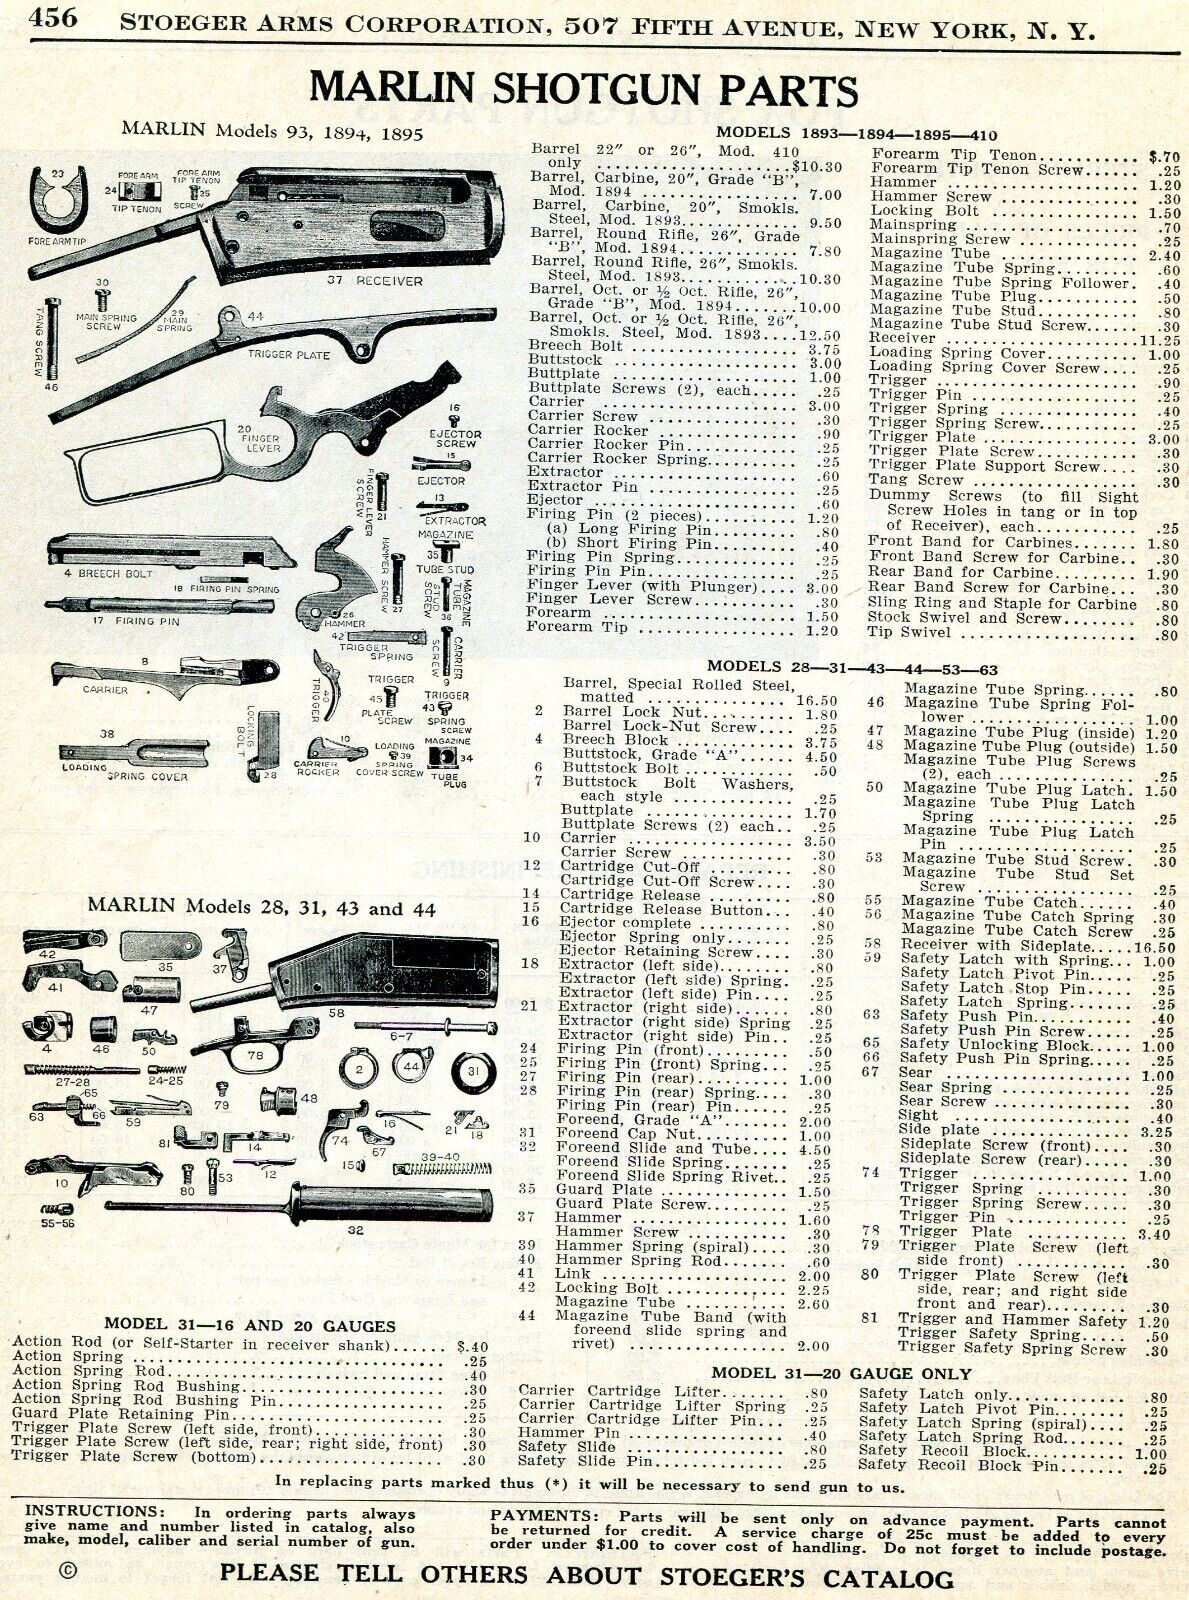 1939 Print Ad of Marlin Model 43 44 28 31 93 1894 1895 Shotgun Parts List